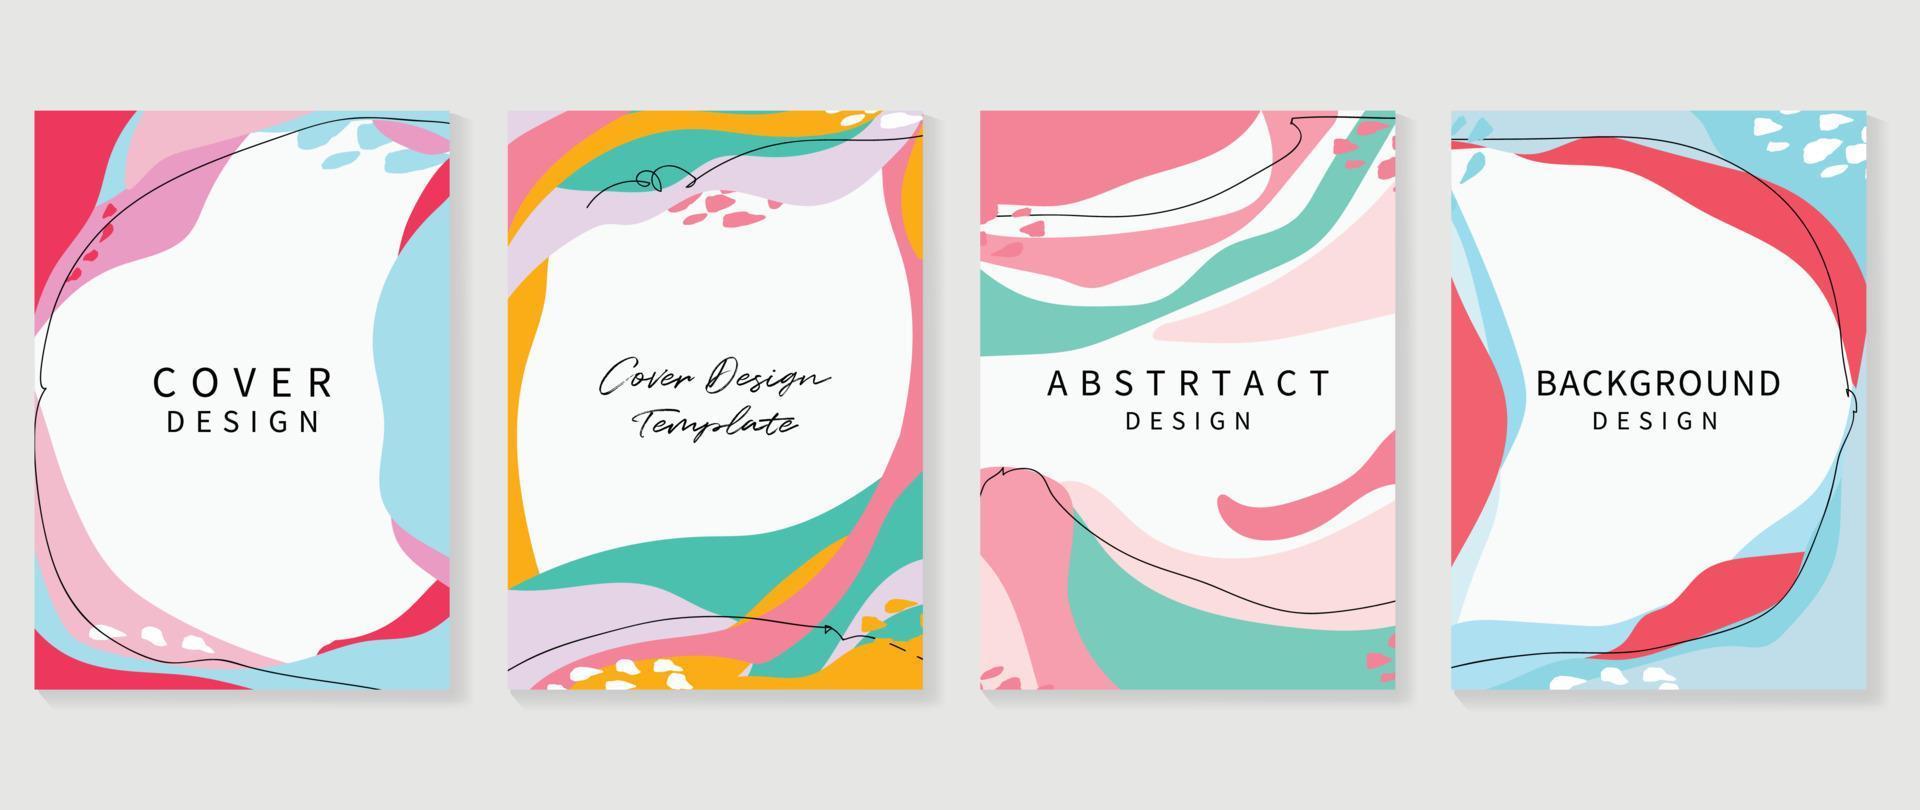 abstrakte Design-Cover-Set-Vektor-Illustration. kreative hintergrundvorlage mit lebendigen farben, die organische formen und linienkunst malen. Design für Grußkarten, Einladungen, Social Media, Poster, Banner. vektor